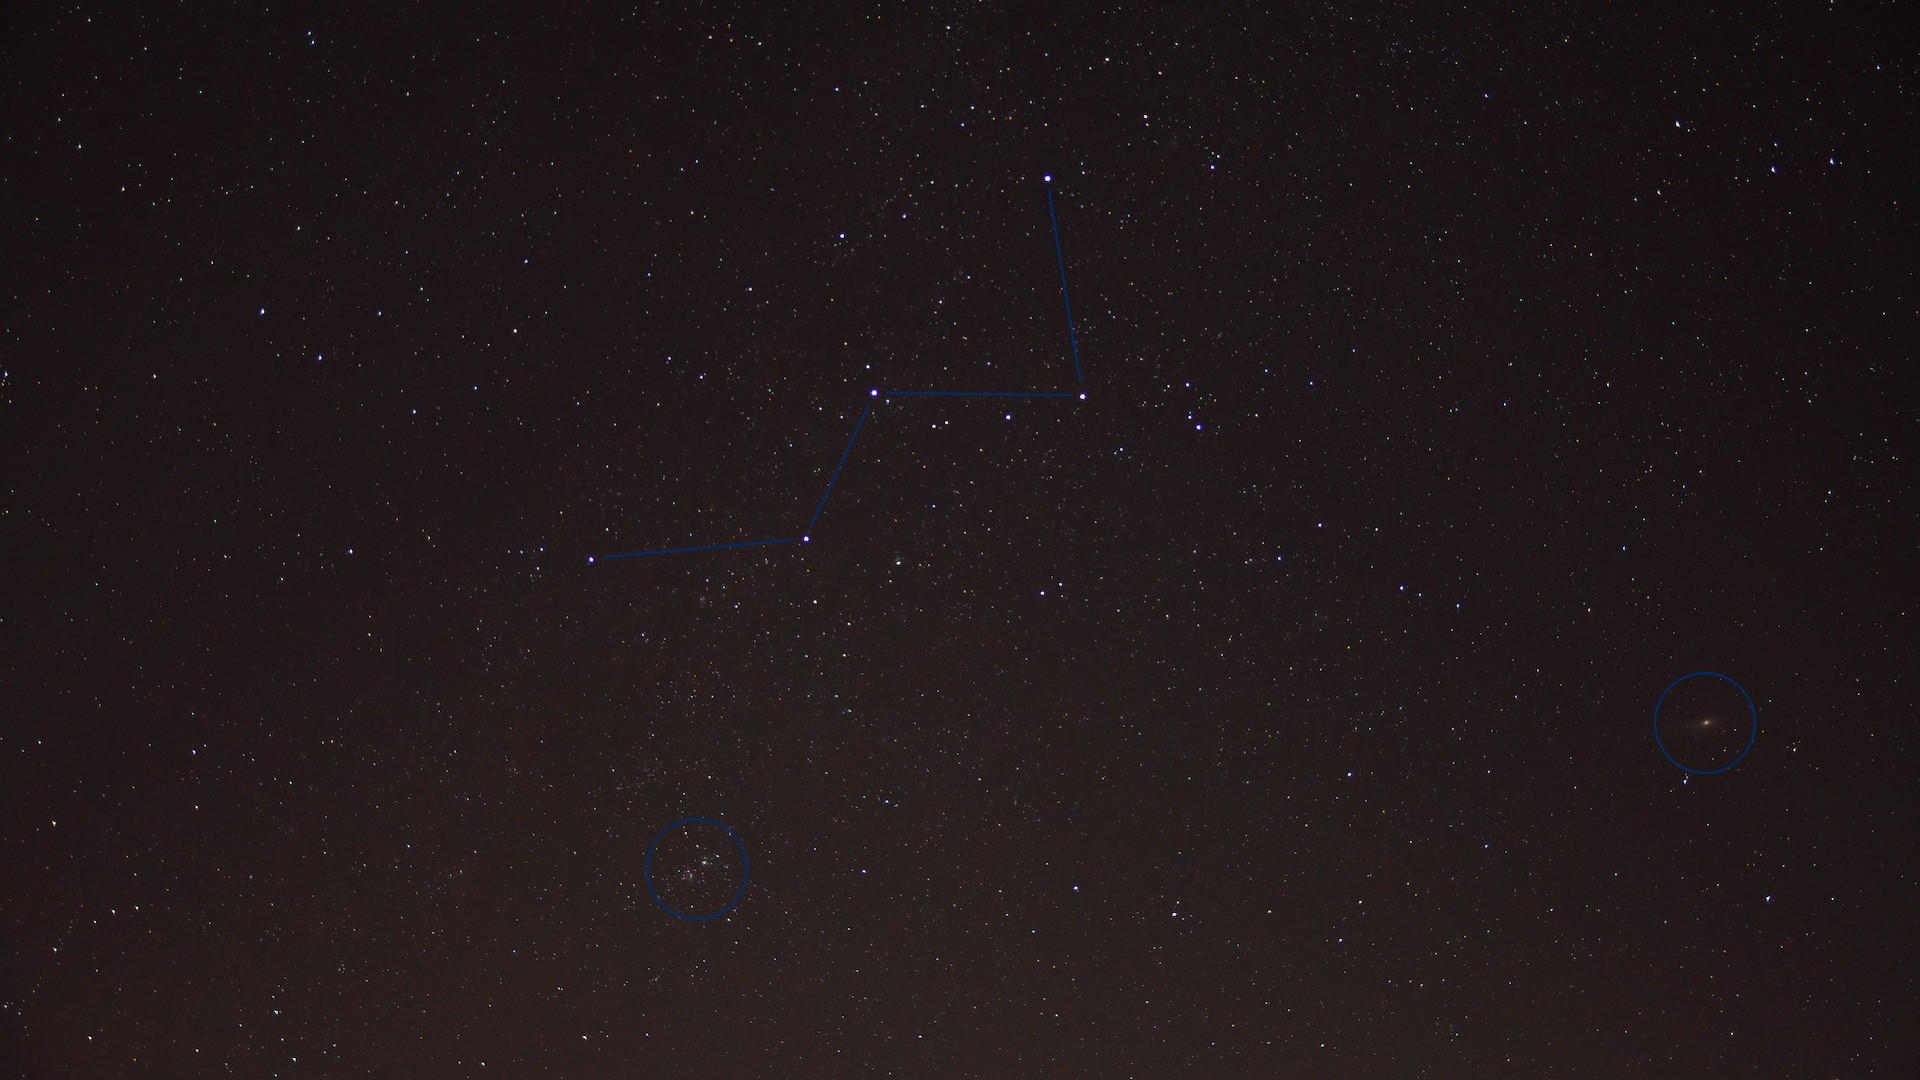 La constellation de Cassiopée. Photo individuelle non traitée, exposition 30 secondes à ISO 800. Le double amas h & chi, la galaxie d’Andromède et bien d’autres objets du ciel profond sont visibles. Photo : Marcus Schenk